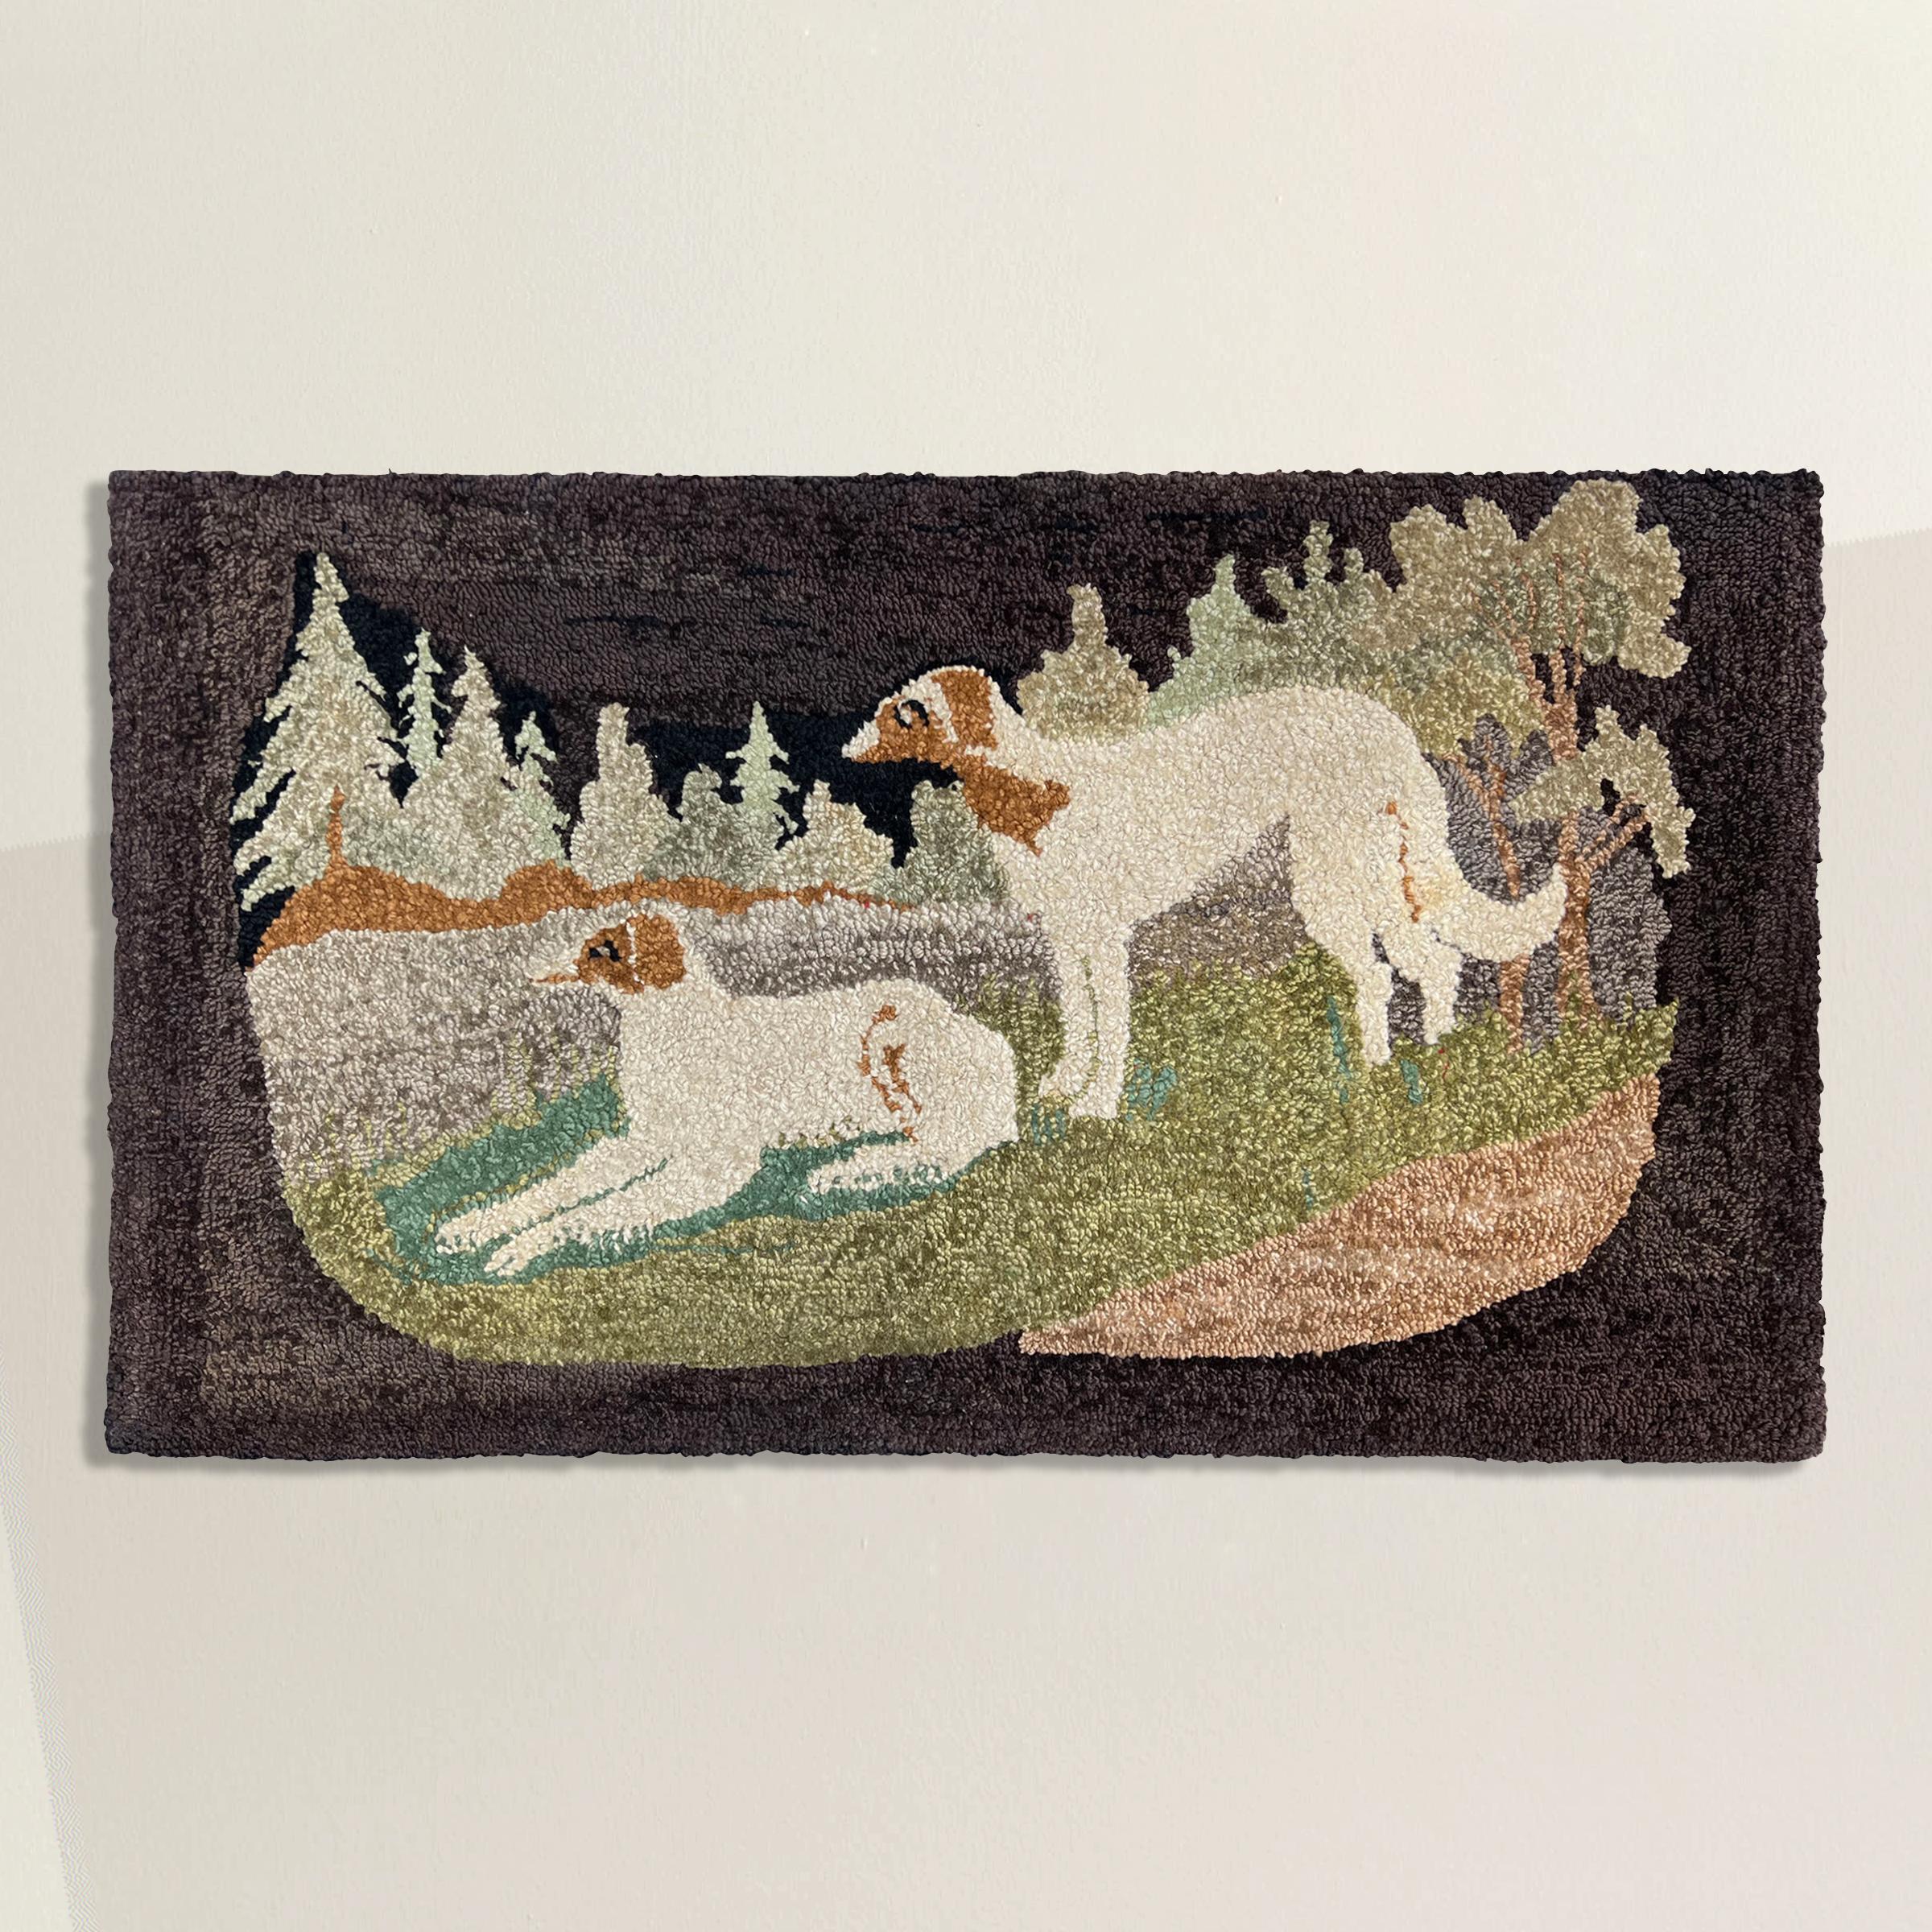 Ce tapis au crochet américain de la fin du XIXe siècle est un reflet captivant de son époque et de la riche histoire de l'artisanat du tapis au crochet dans la décoration intérieure des premiers temps de l'Amérique. Avec un art méticuleux, elle